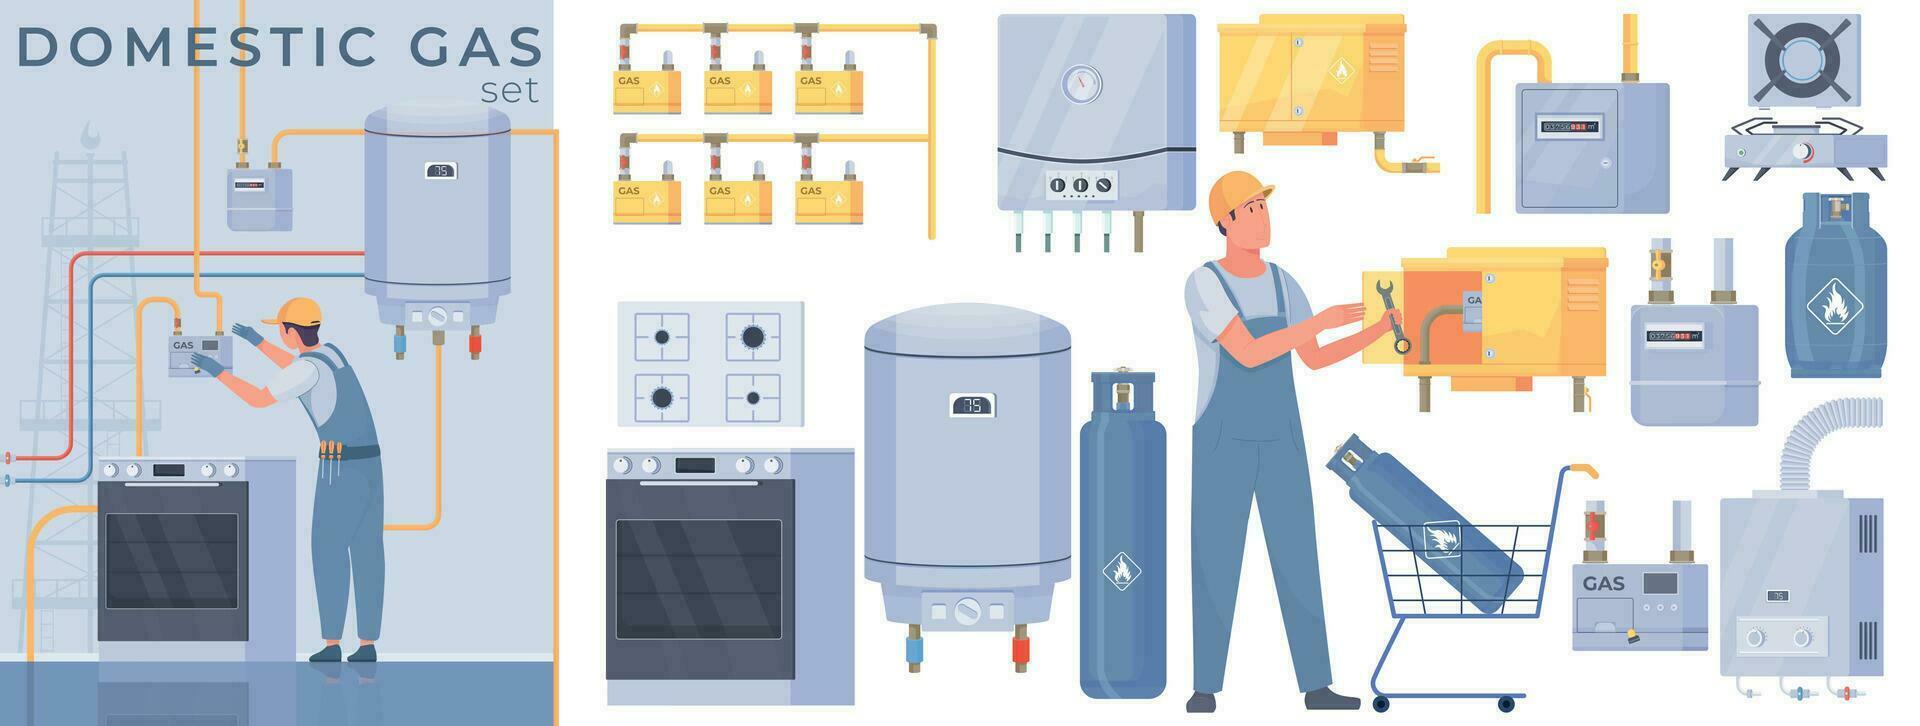 Gas Appliances Composition Set vector